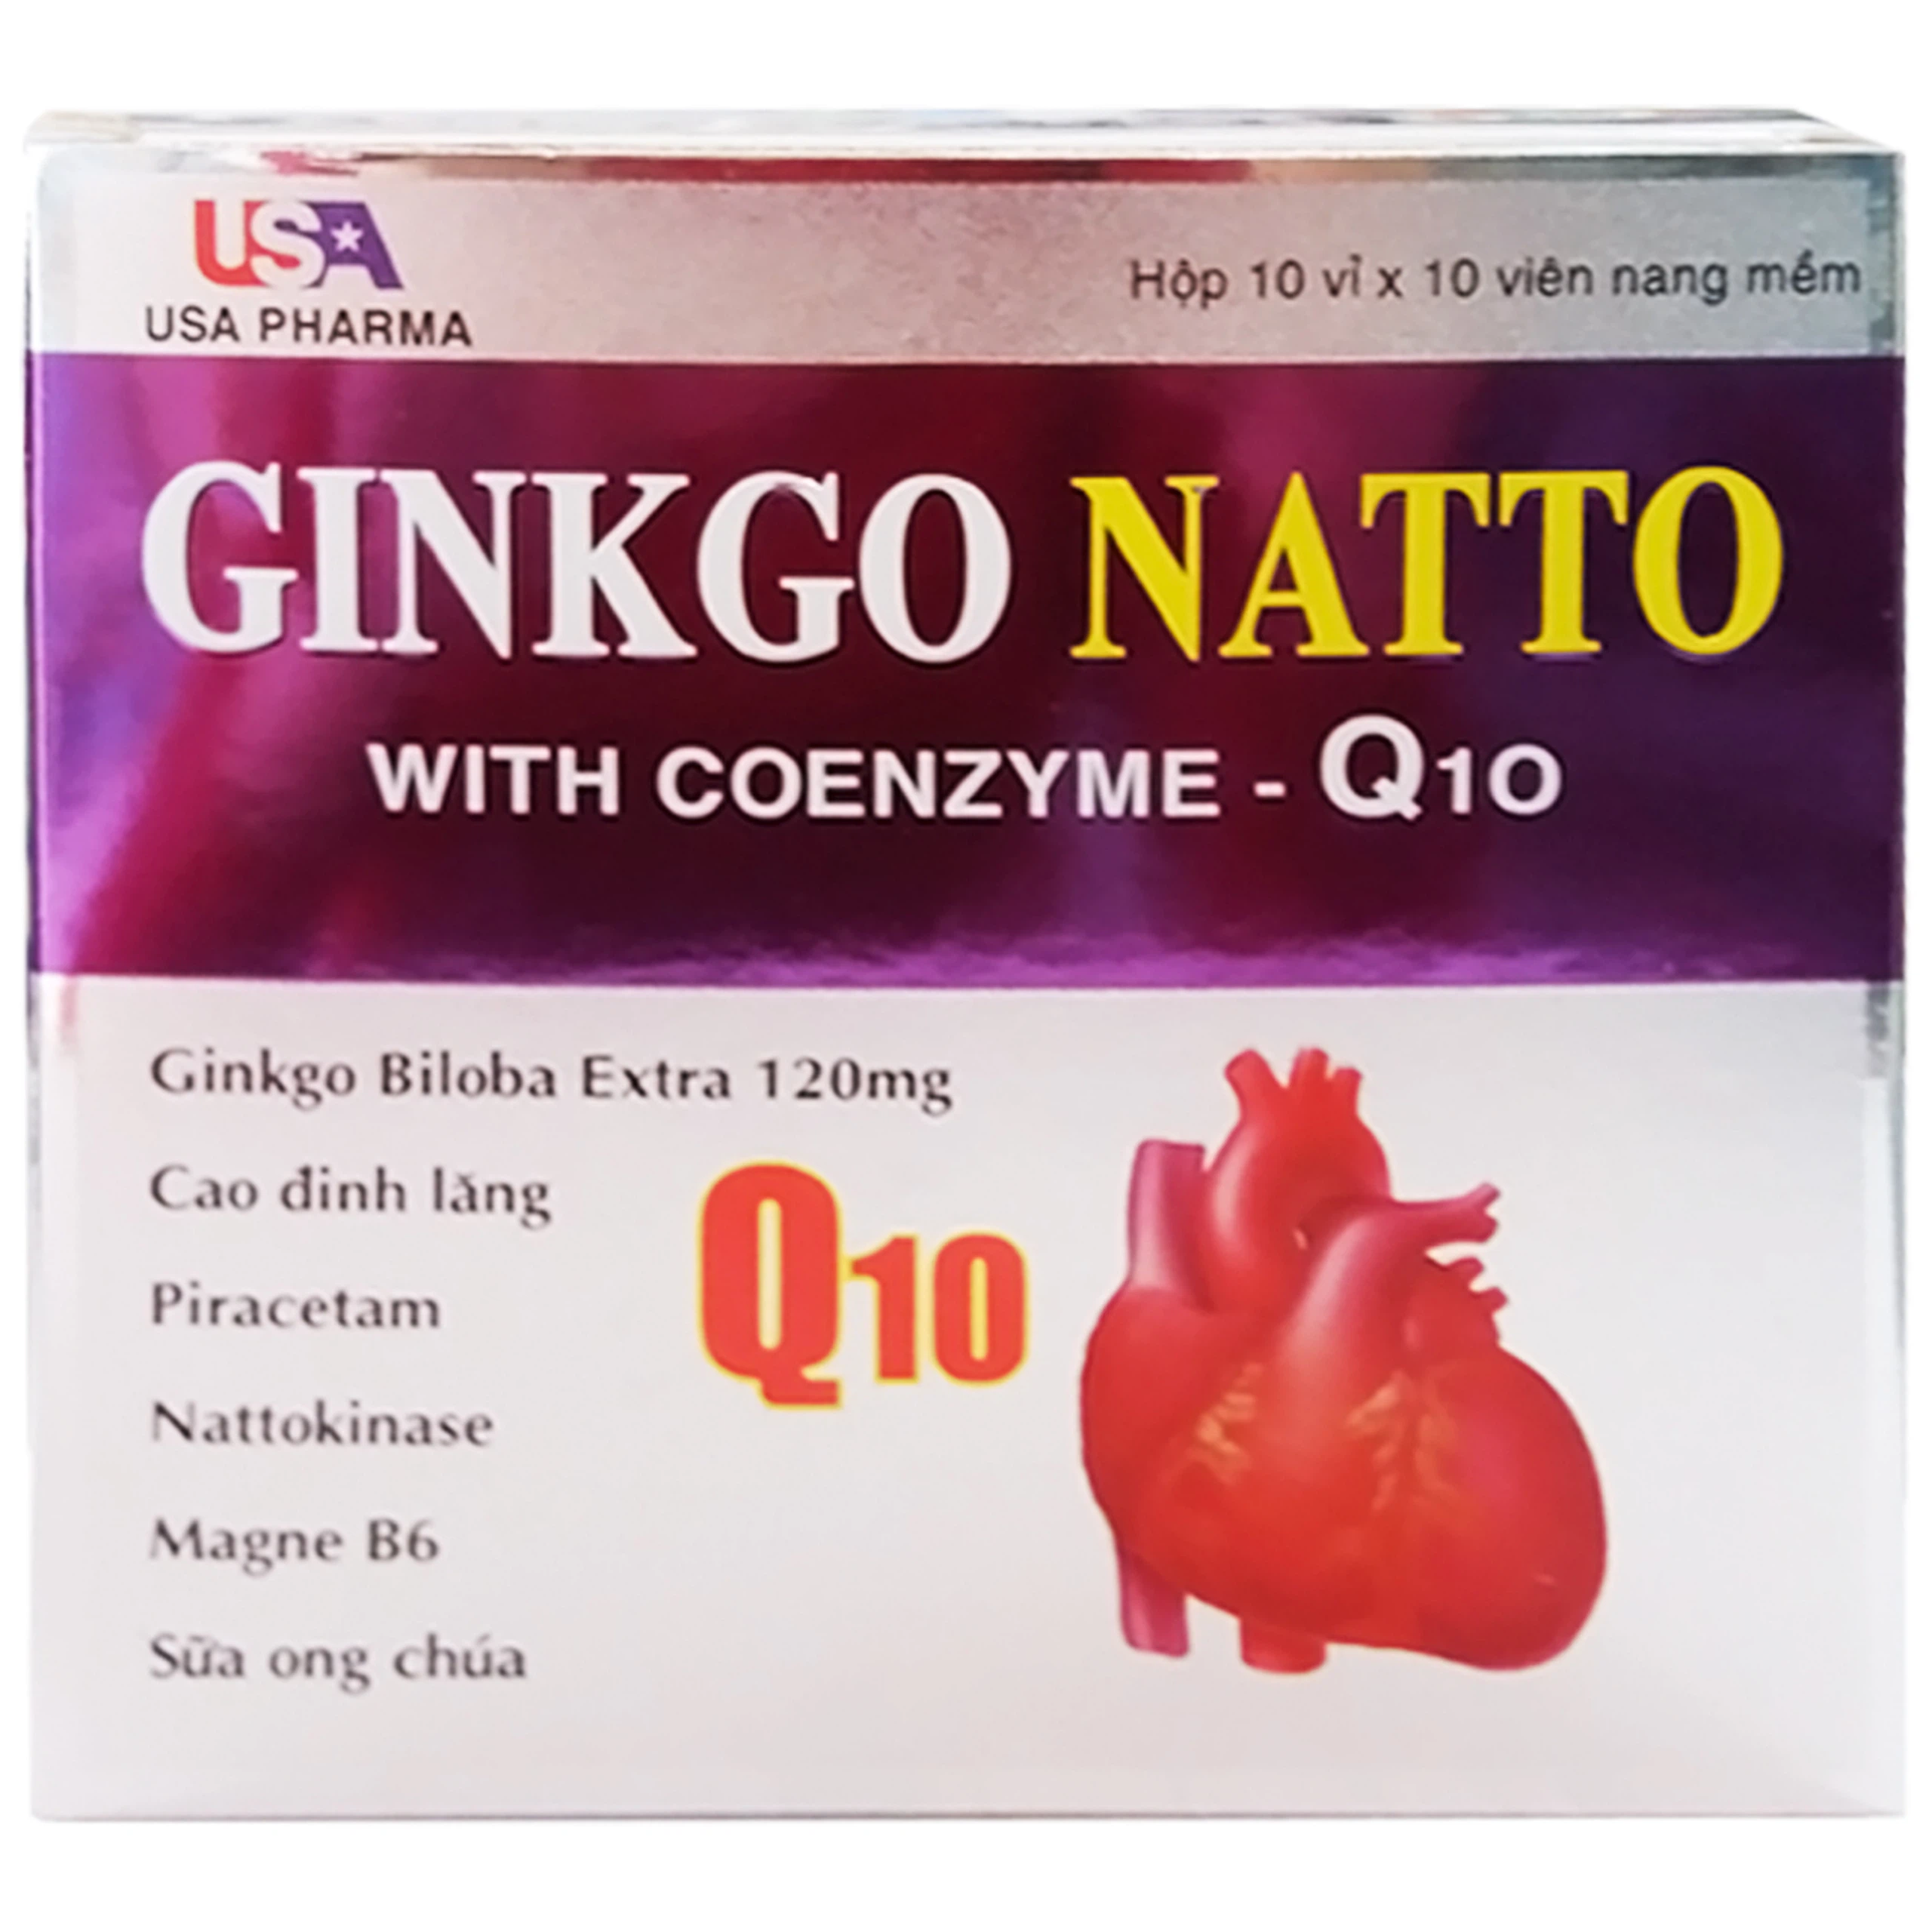 Viên uống Ginkgo Natto With Coenzym Q10 120mg USA bổ sung dưỡng chất cho não (10 vỉ x 10 viên)